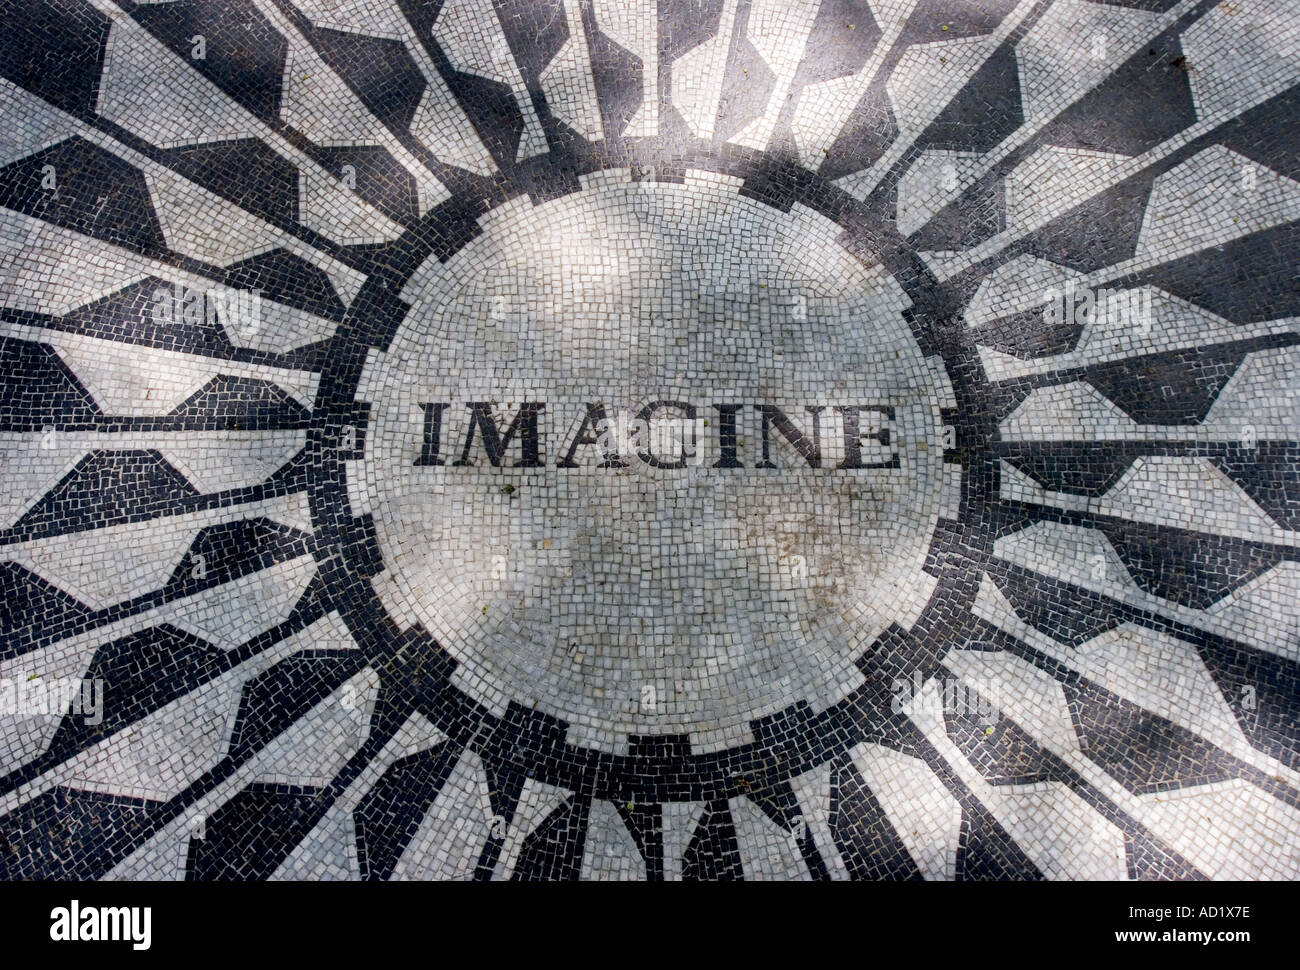 John Lennon Memorial at Strawberry Fields Central Park New York Stock Photo